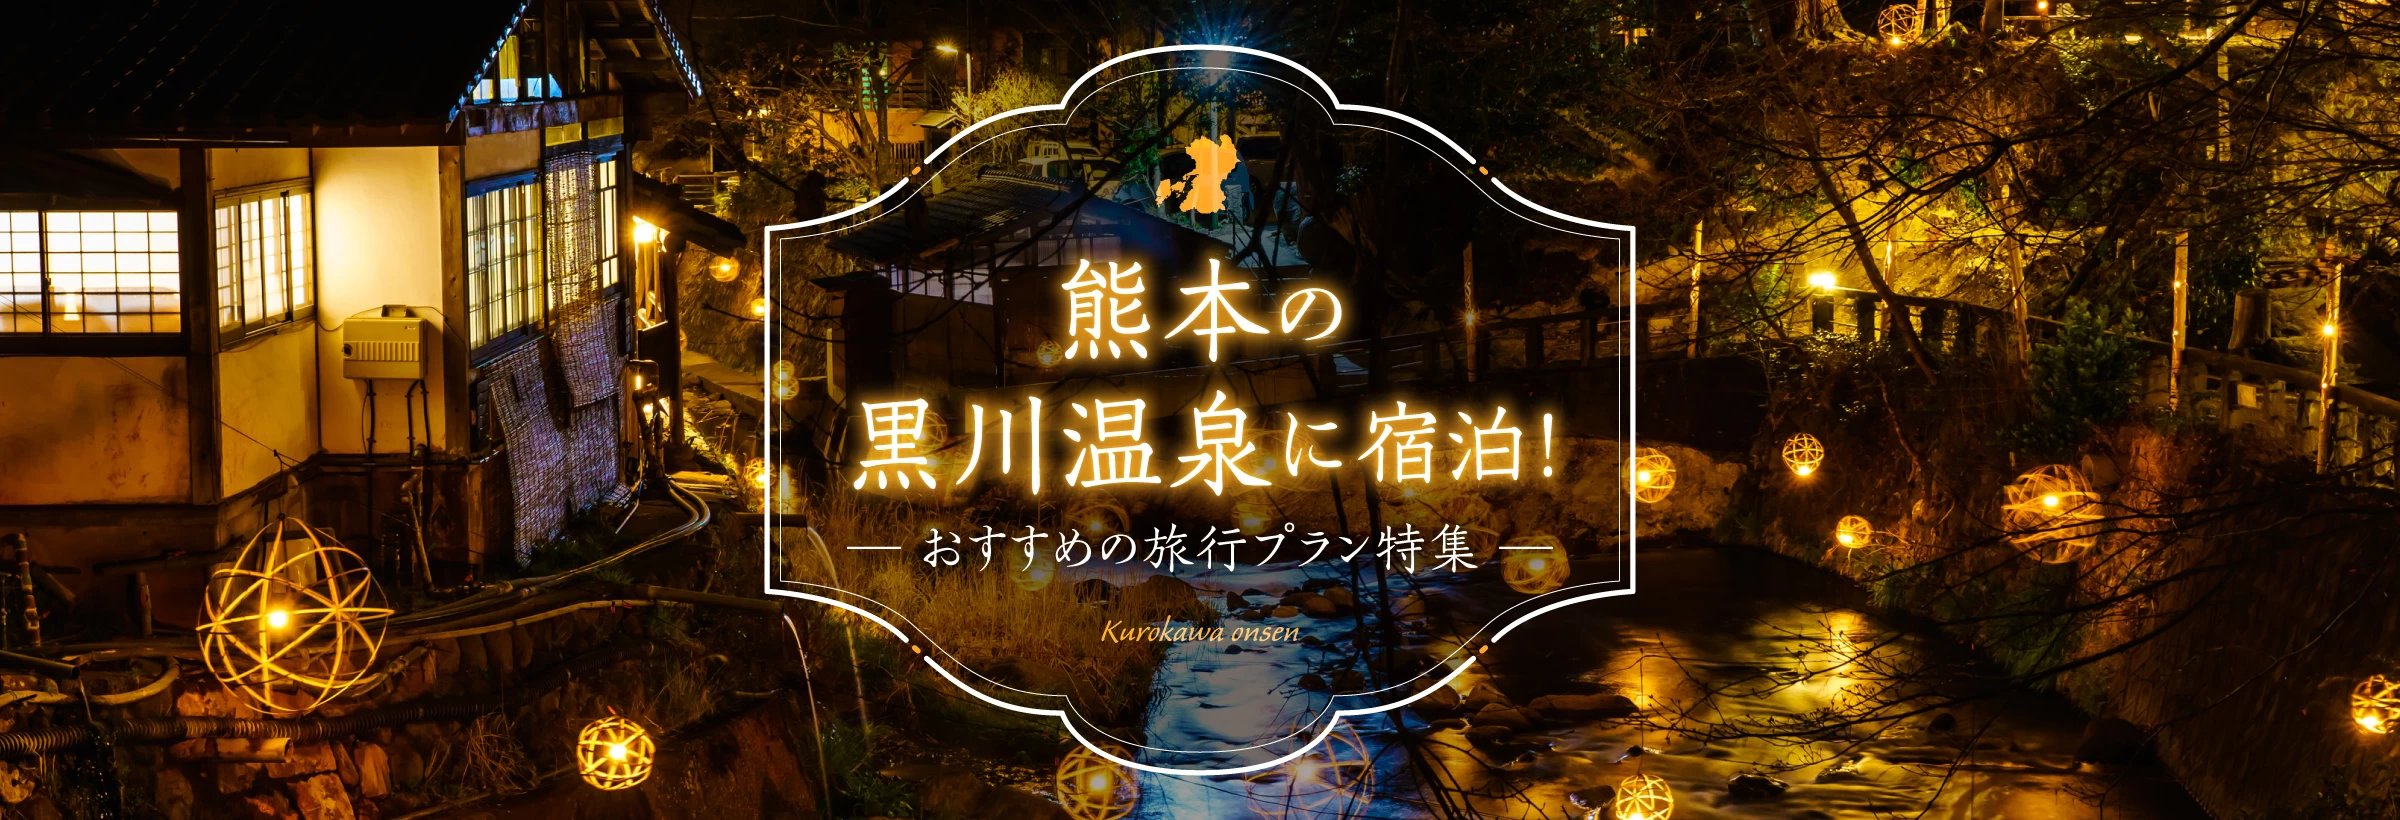 全国屈指の人気を誇る、黒川温泉。熊本県の阿蘇のさらに奥地に位置し、江戸時代から続く温泉地です。温泉街全体の風景がまるでひとつの旅館のように自然へと溶け込んでいるのが特徴で、泉質の種類が豊富なのも魅力。人気の露天風呂巡りなどを楽しめるモデルコースをご紹介します。